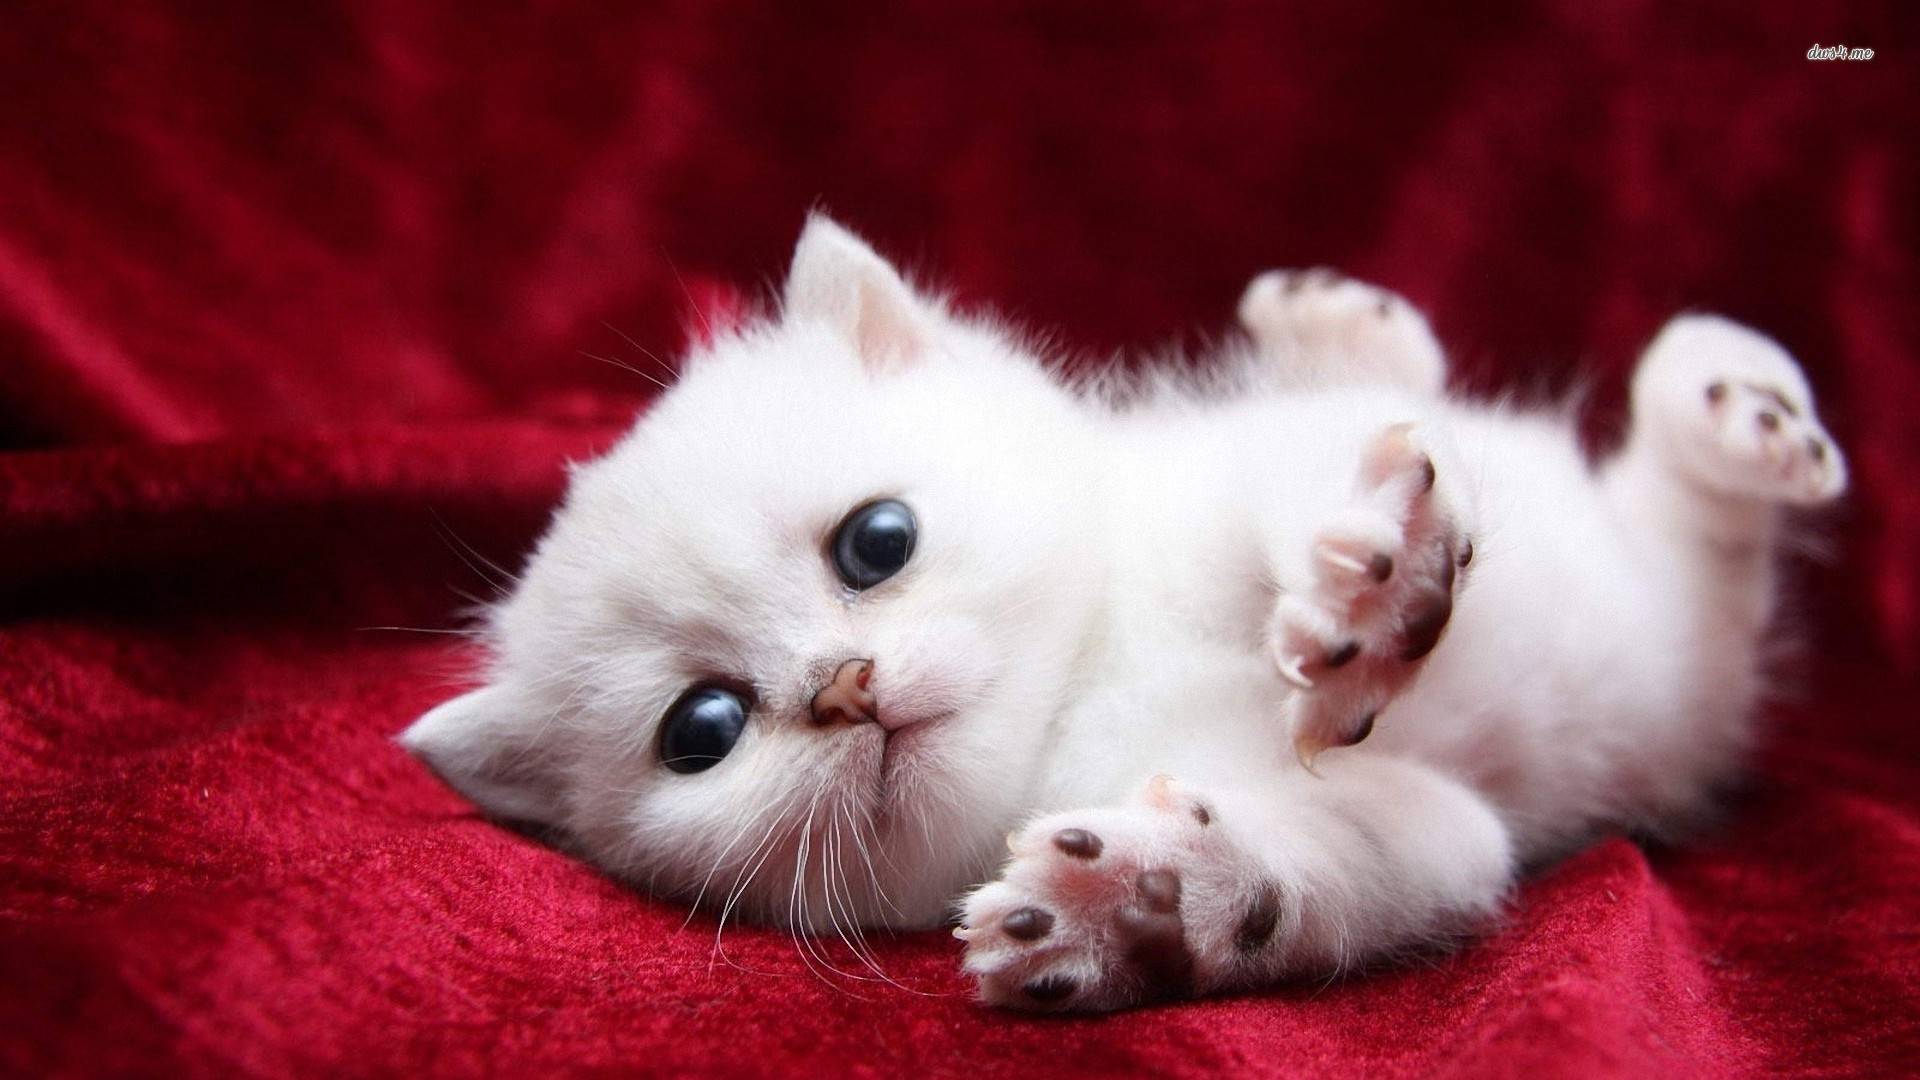 1920x1080 Tải xuống miễn phí Hình nền mèo trắng dễ thương Mèo mèo trắng siêu dễ thương [1920x1080] cho Máy tính để bàn, Di động & Máy tính bảng của bạn.  Khám phá Hình nền Mèo trắng.  Hình nền máy tính mèo, Mèo đen và trắng